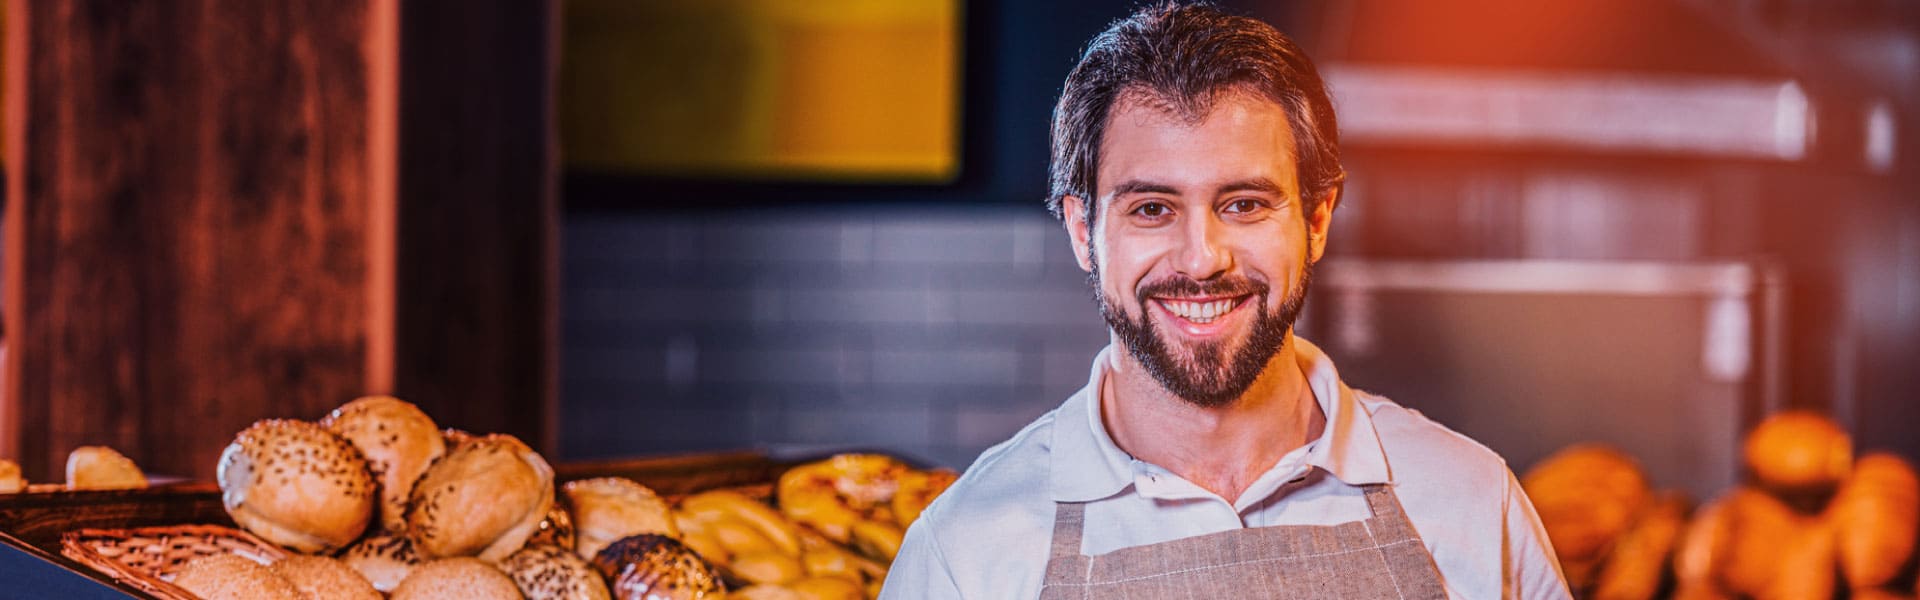 Hombre sonriendo, trabajando en su panadería